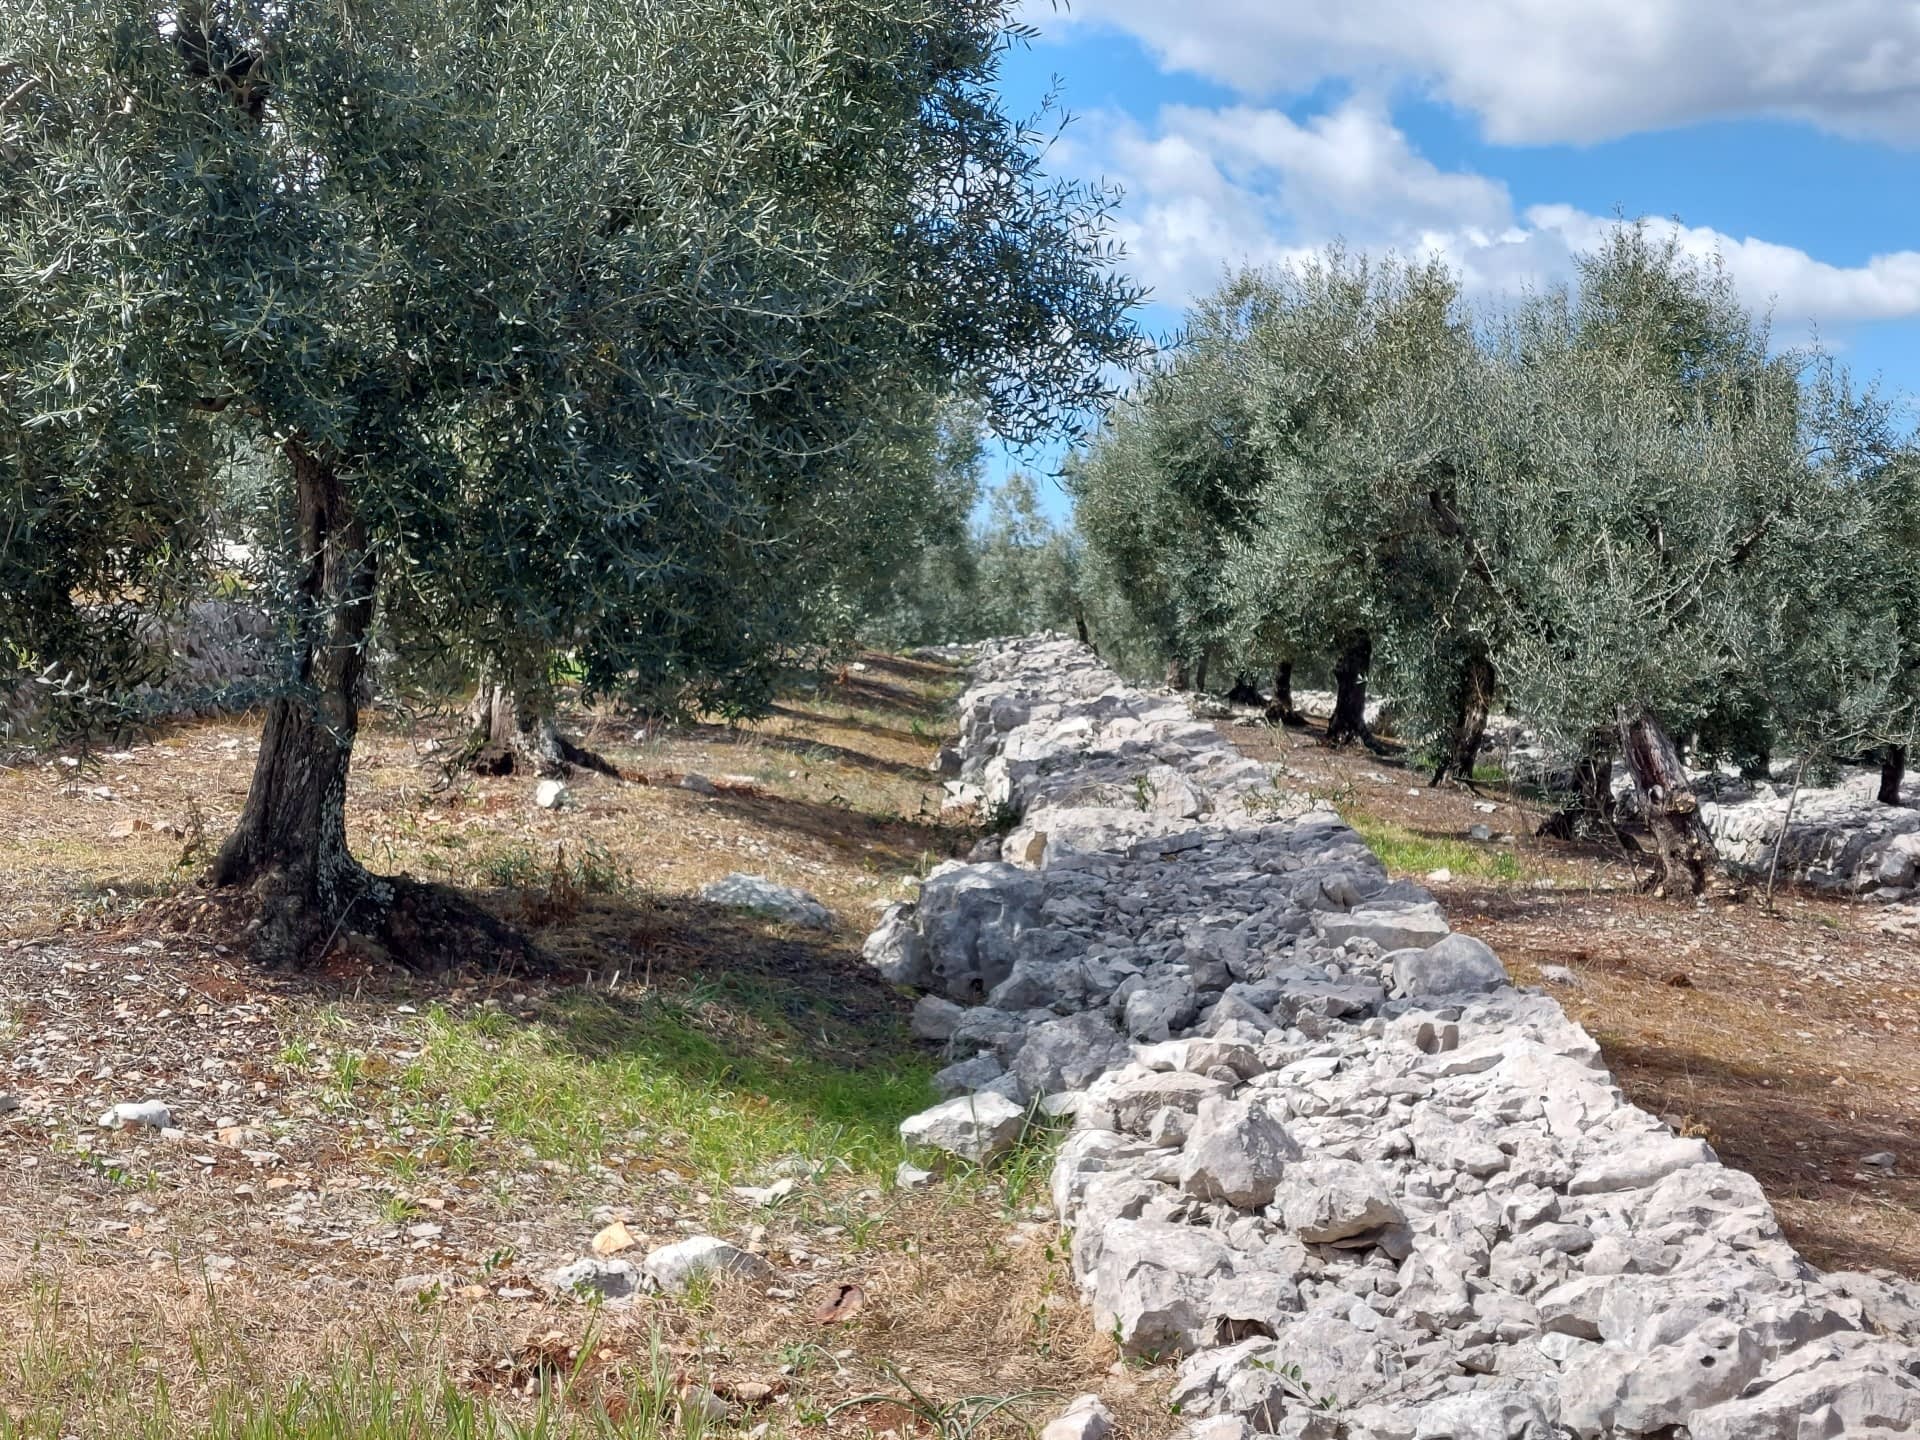 意大利中部生产商的最佳橄榄油生产竞赛欧洲质量在艰难收获橄榄油时代后大放异彩